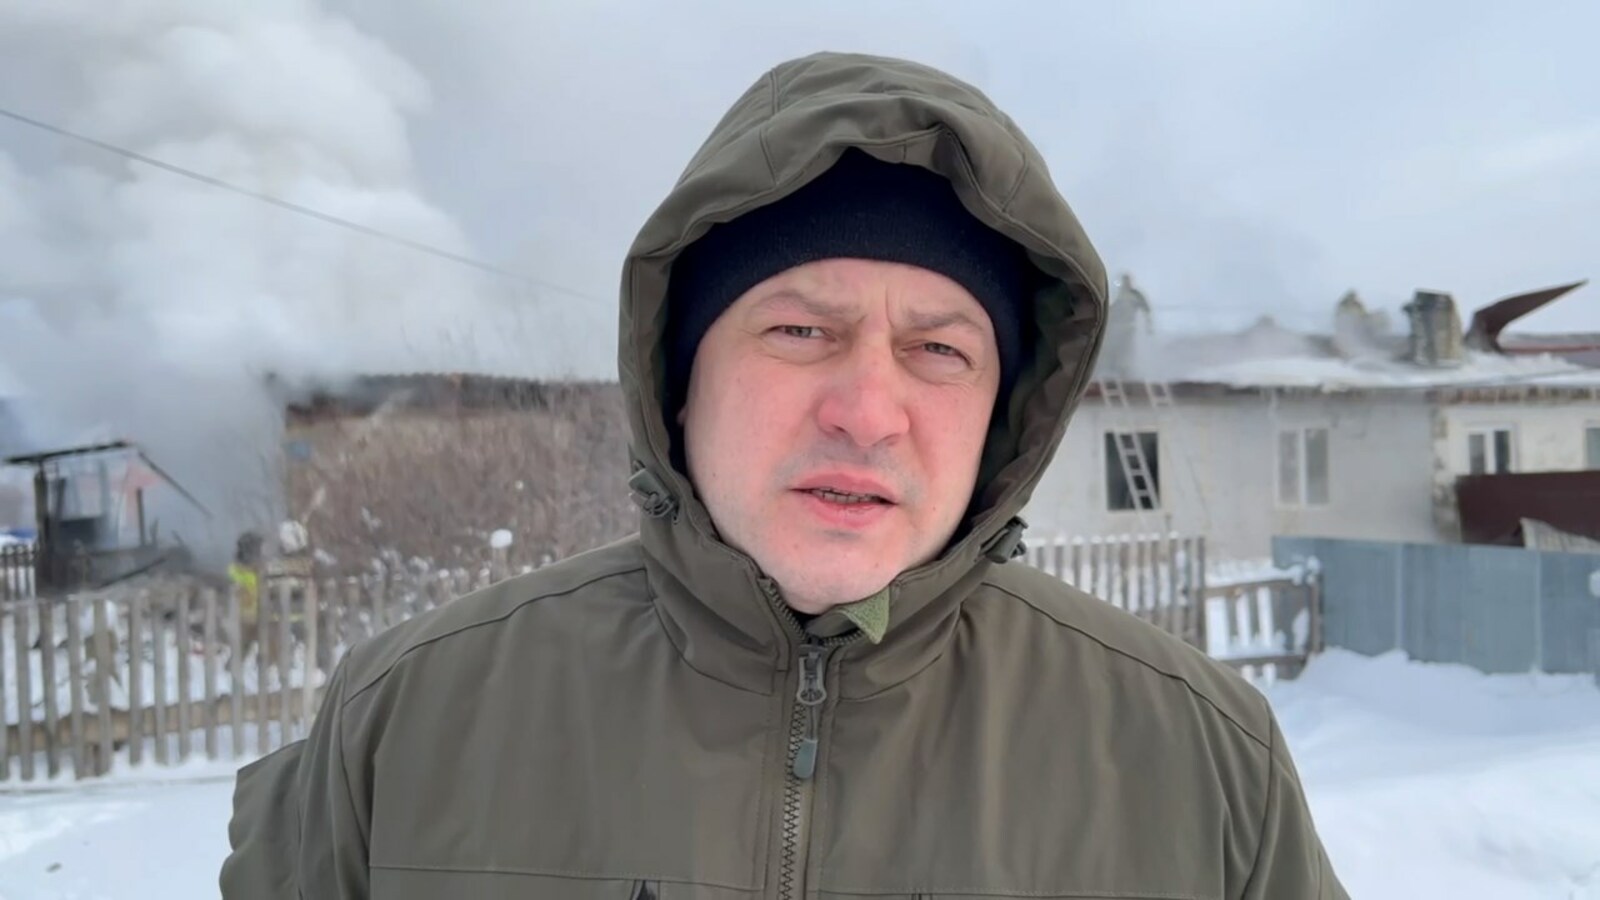 Мэр Уфы сообщил о пожаре в Федоровке, эвакуировали 14 человек